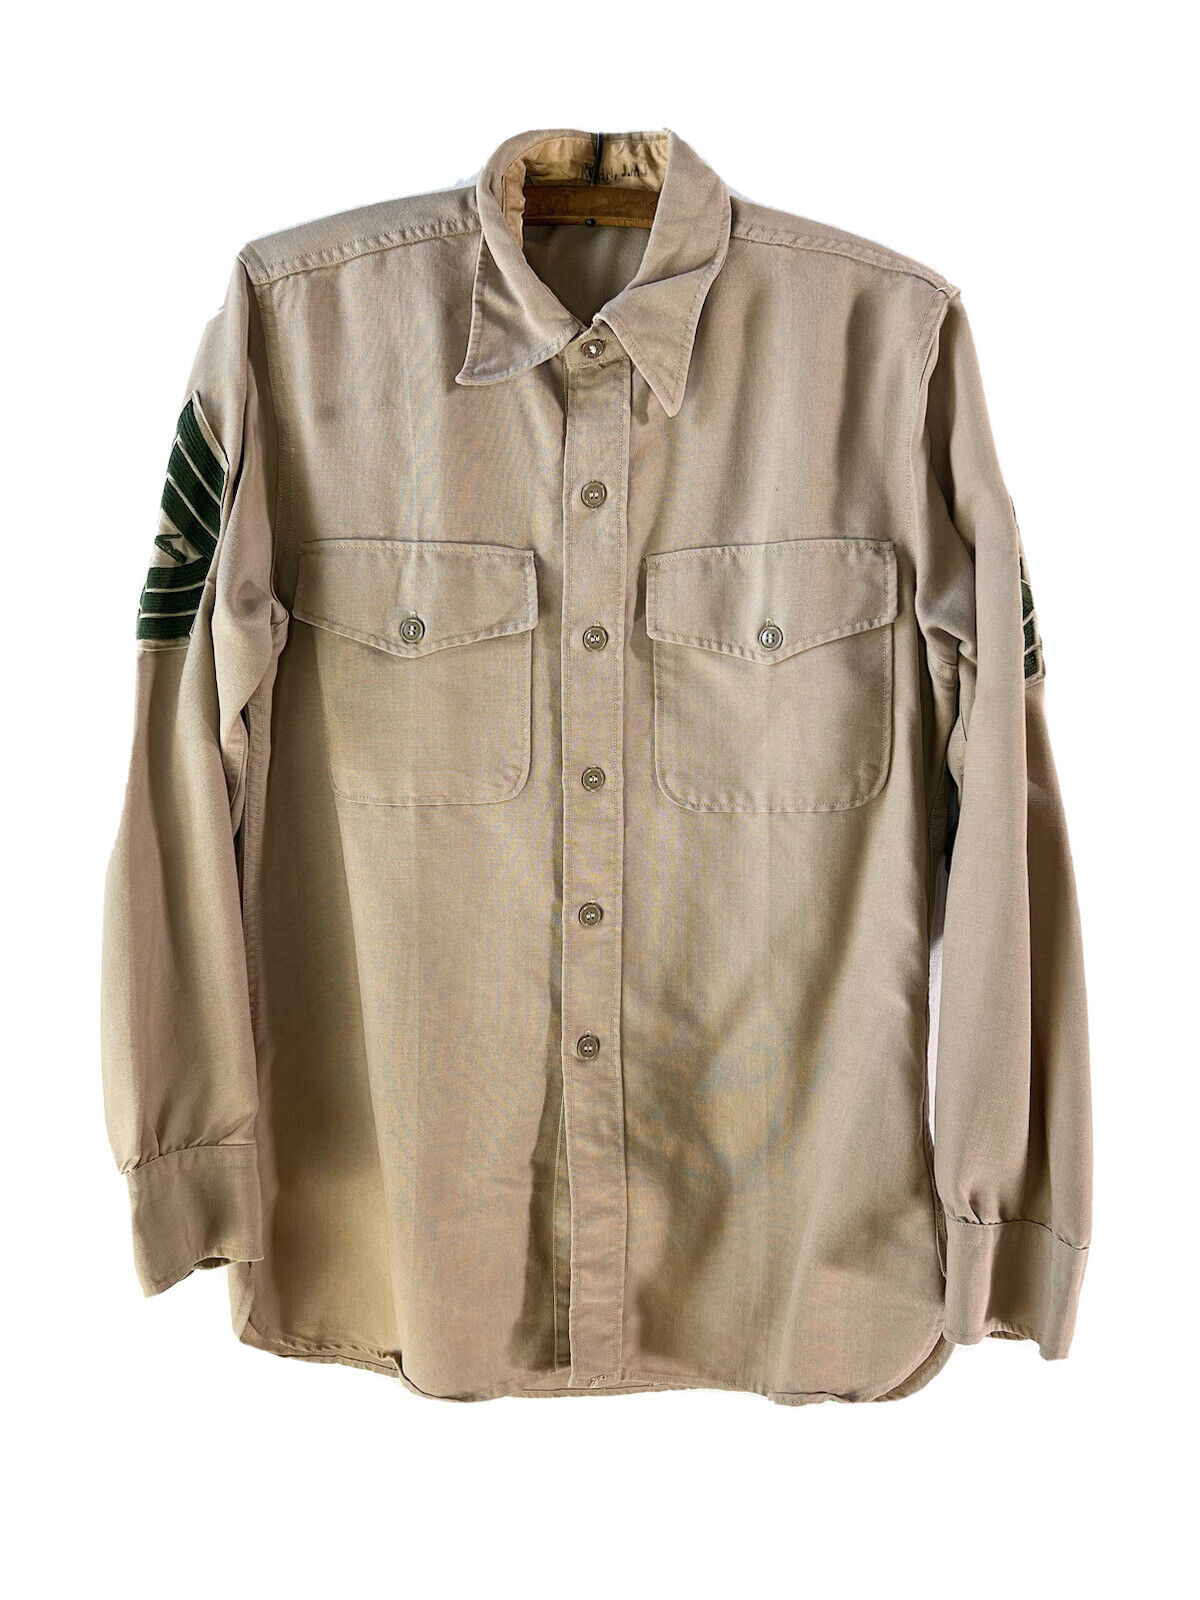 Vintage WW2 WWII U.S. Army Khaki Wool Shirt Identified Stenciled J M J Kohn